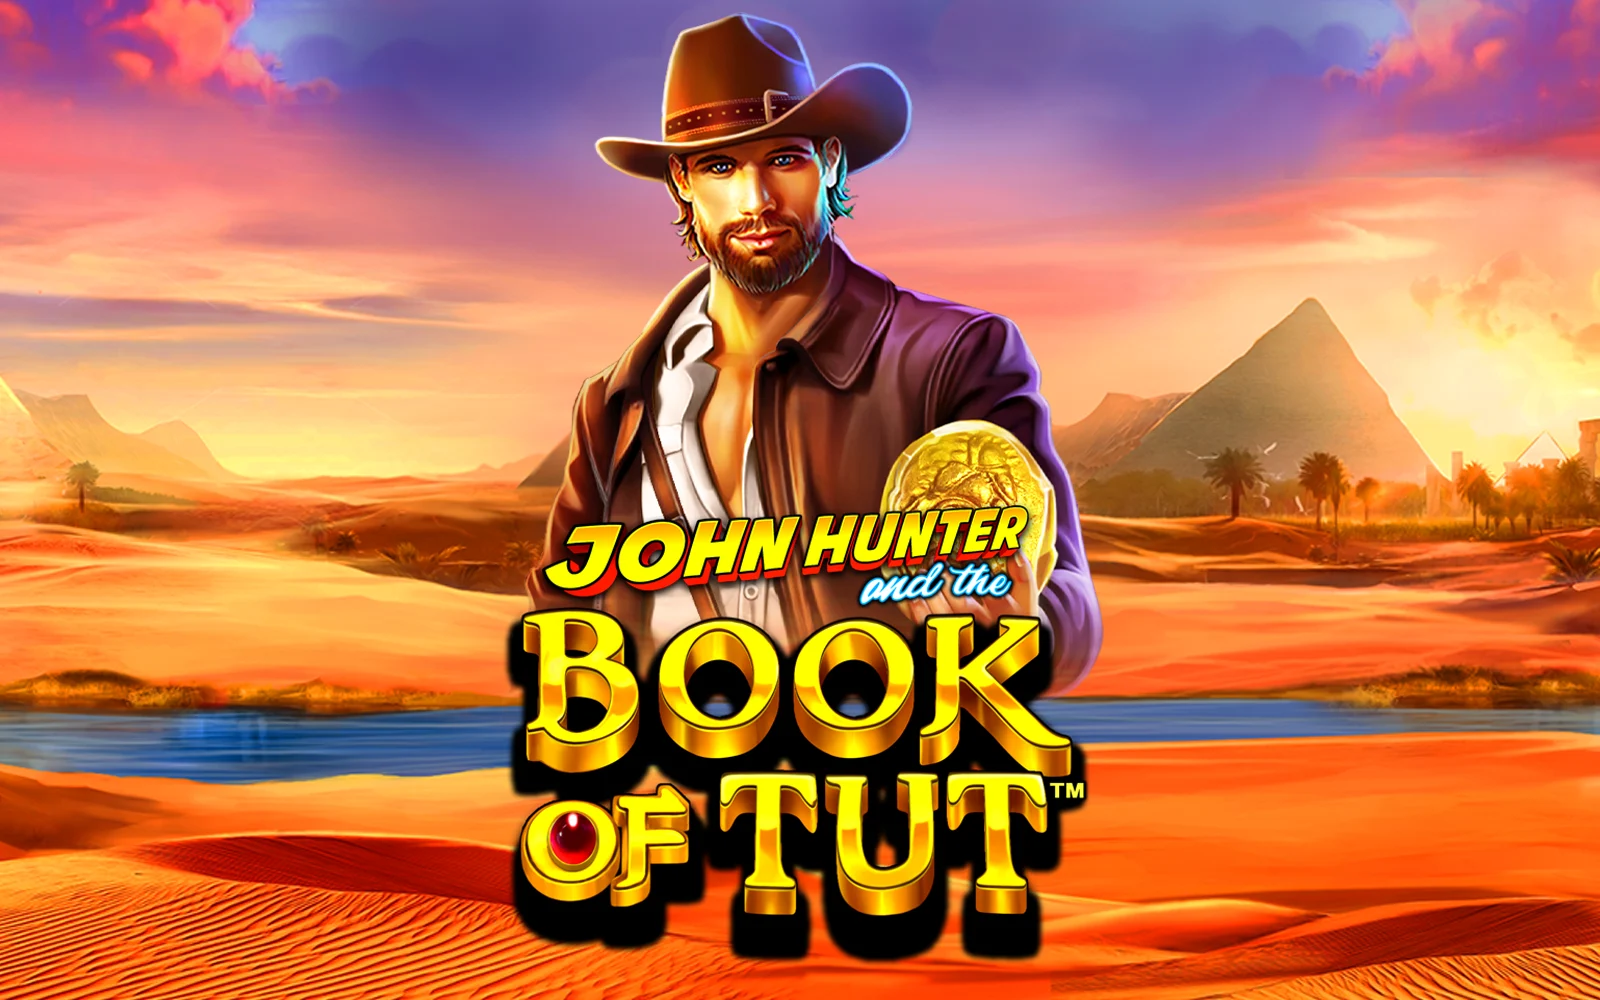 Chơi John Hunter and the Book of Tut™ trên sòng bạc trực tuyến Starcasino.be